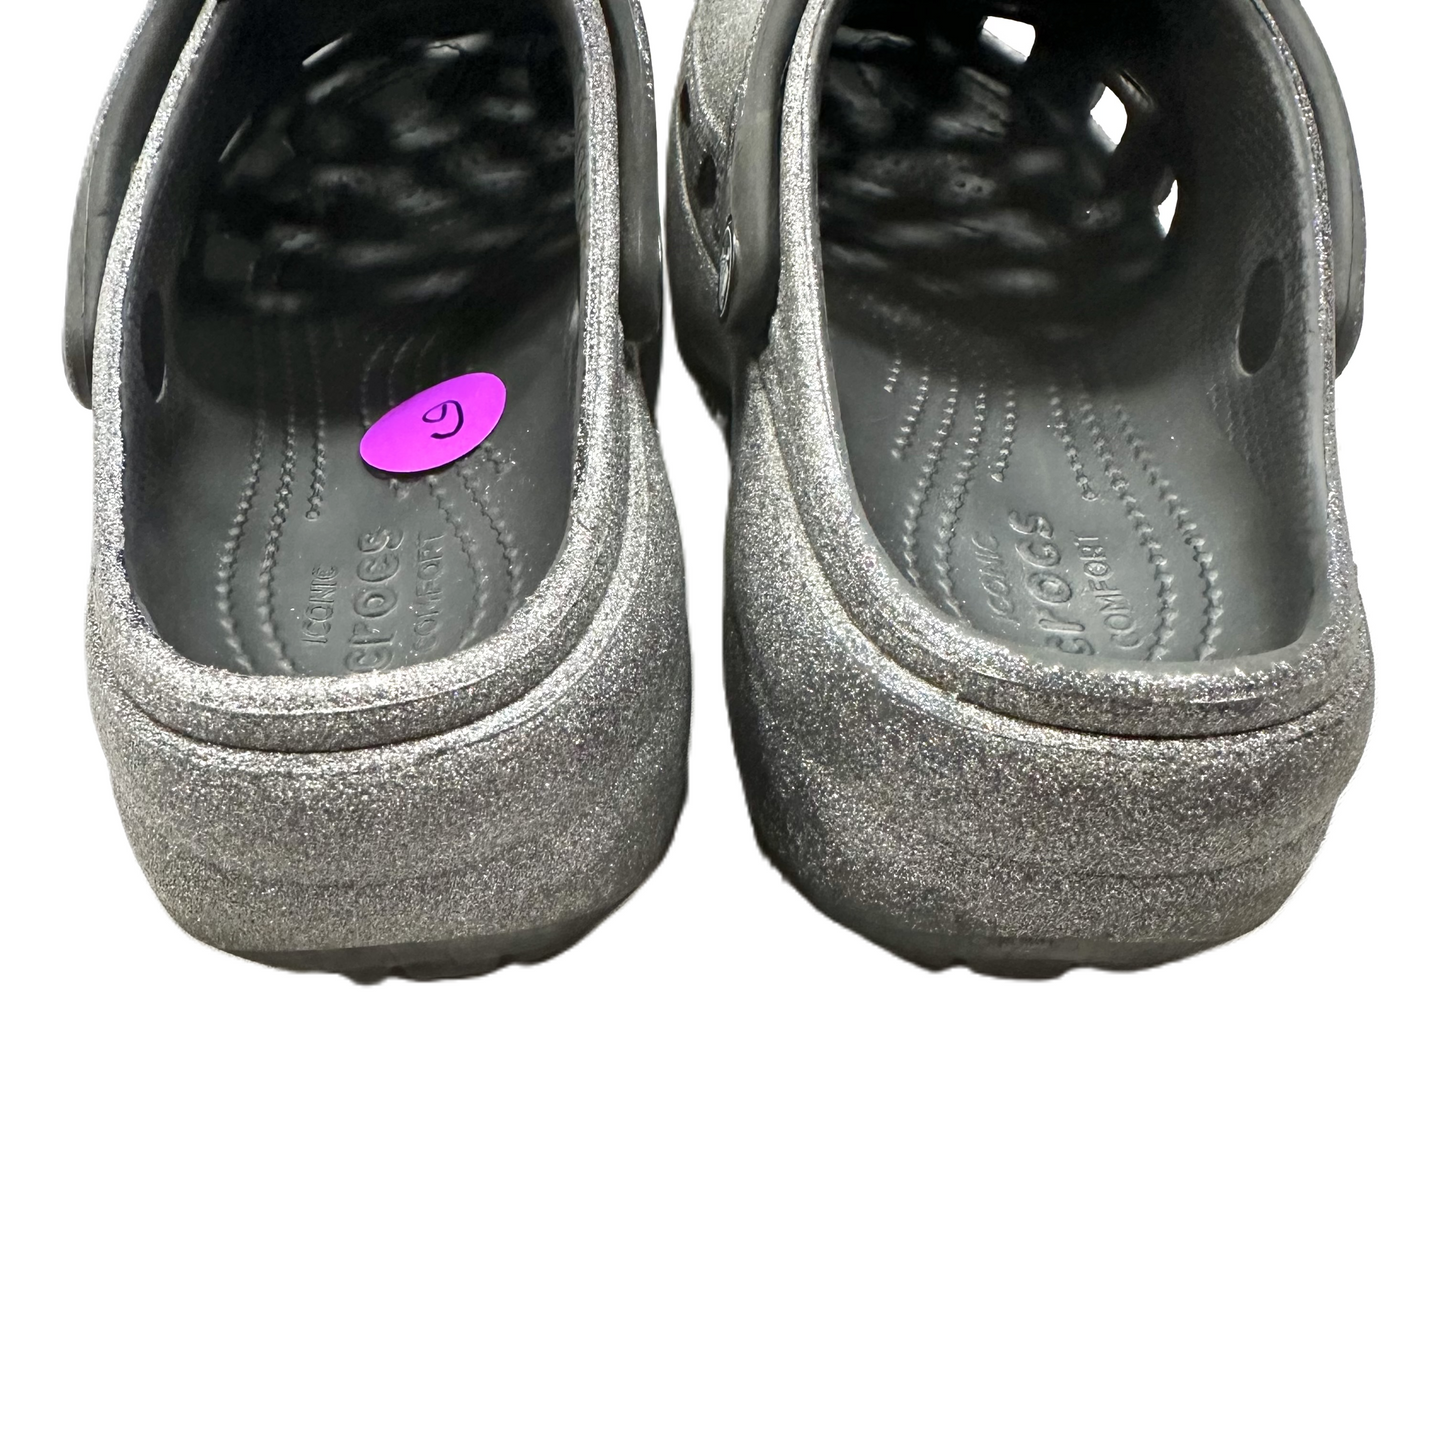 Black Sandals Flats By Crocs, Size: 6